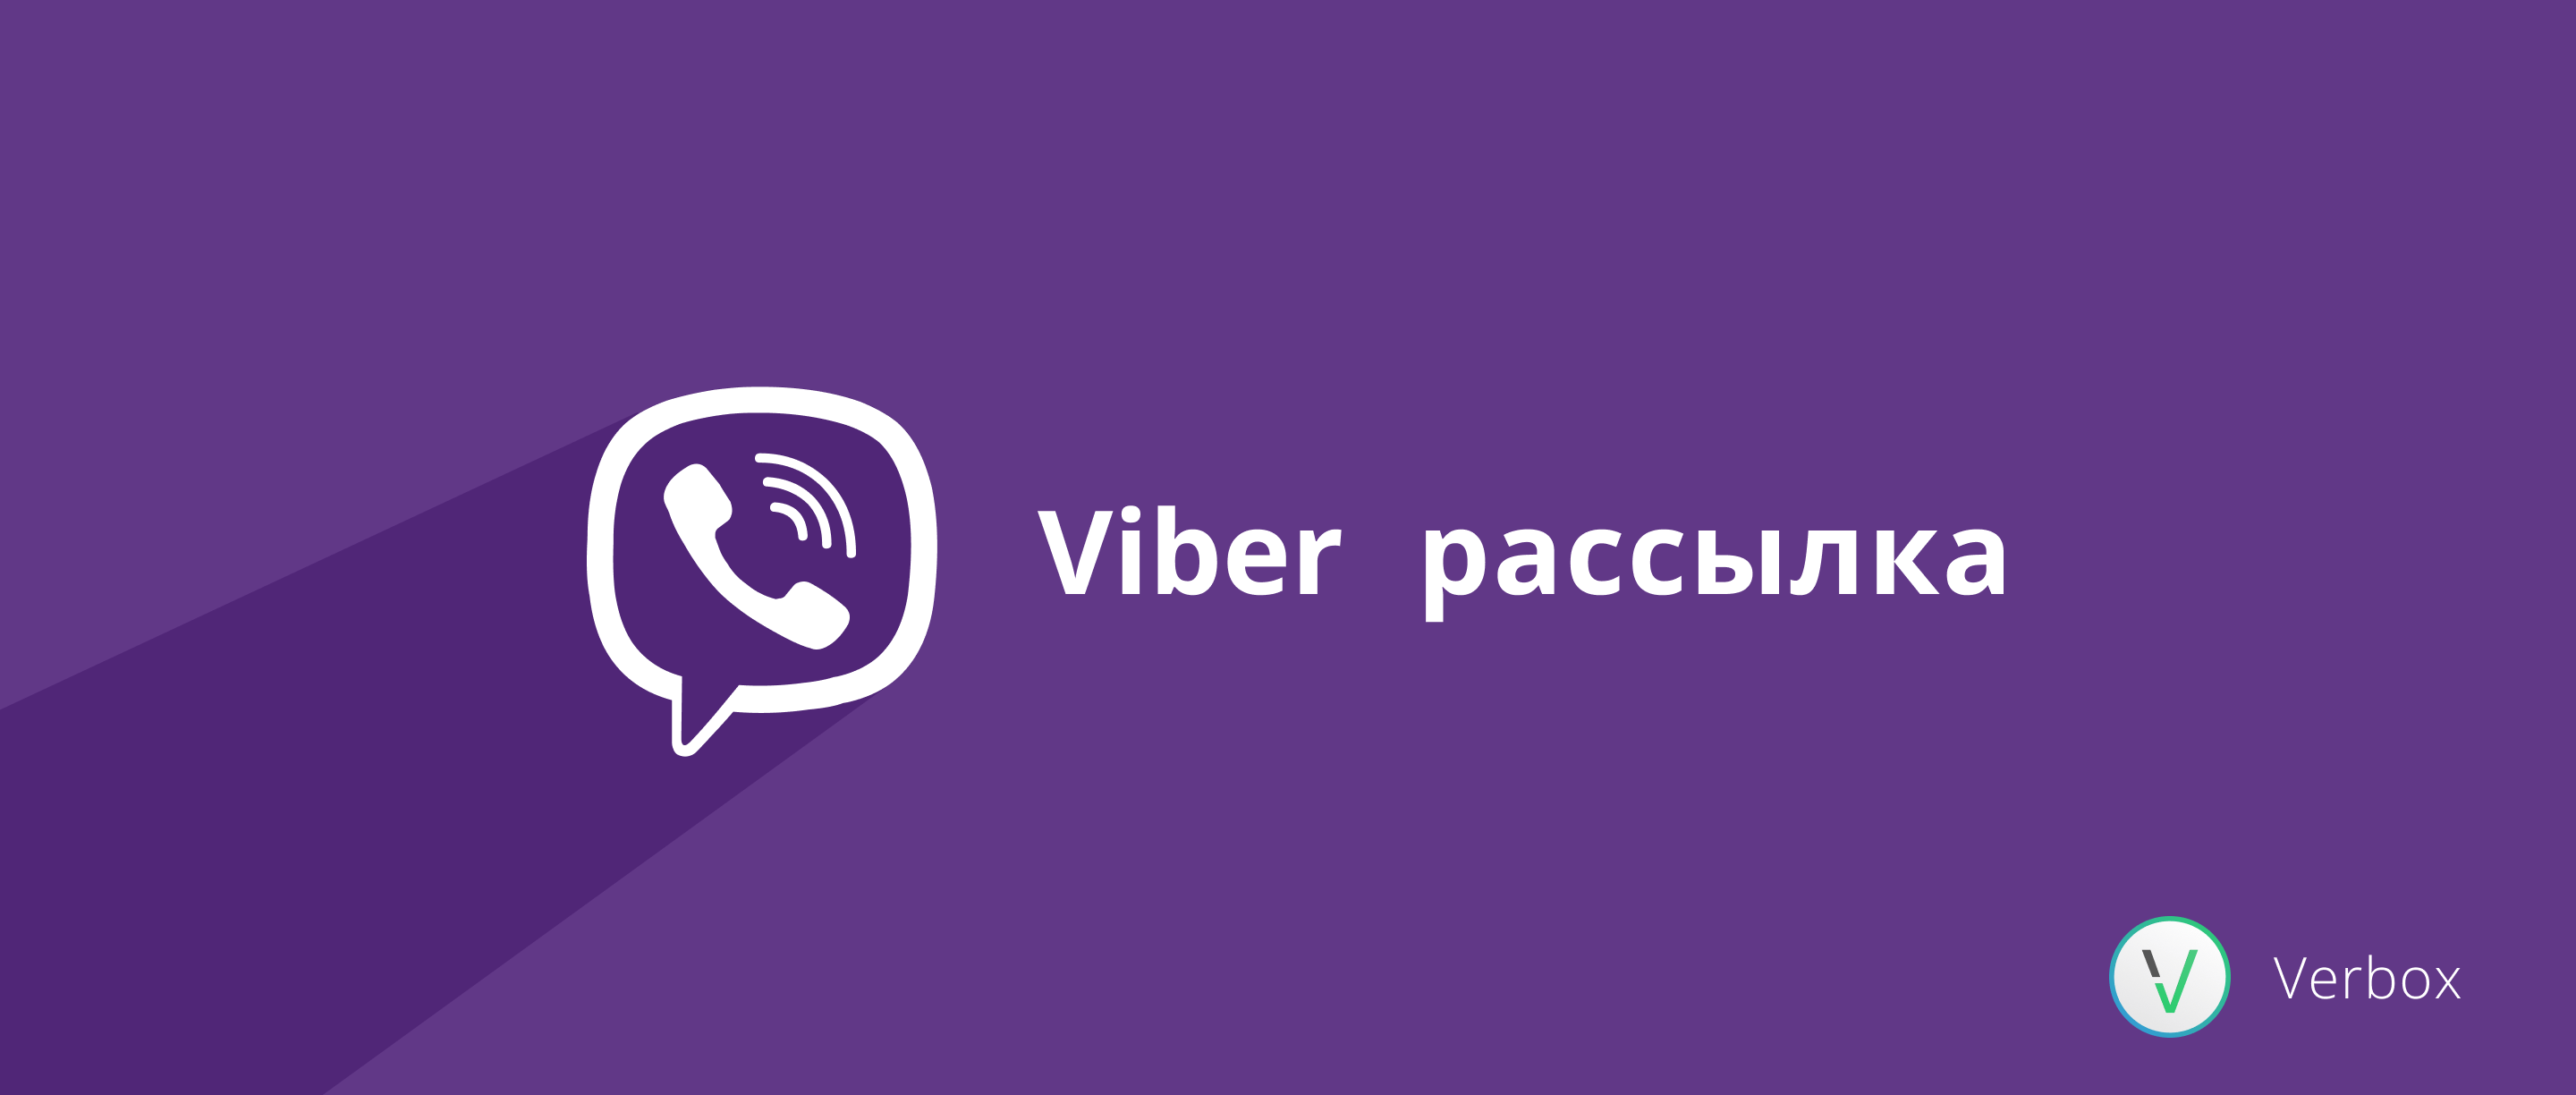 Раскрутка сообществ Viber